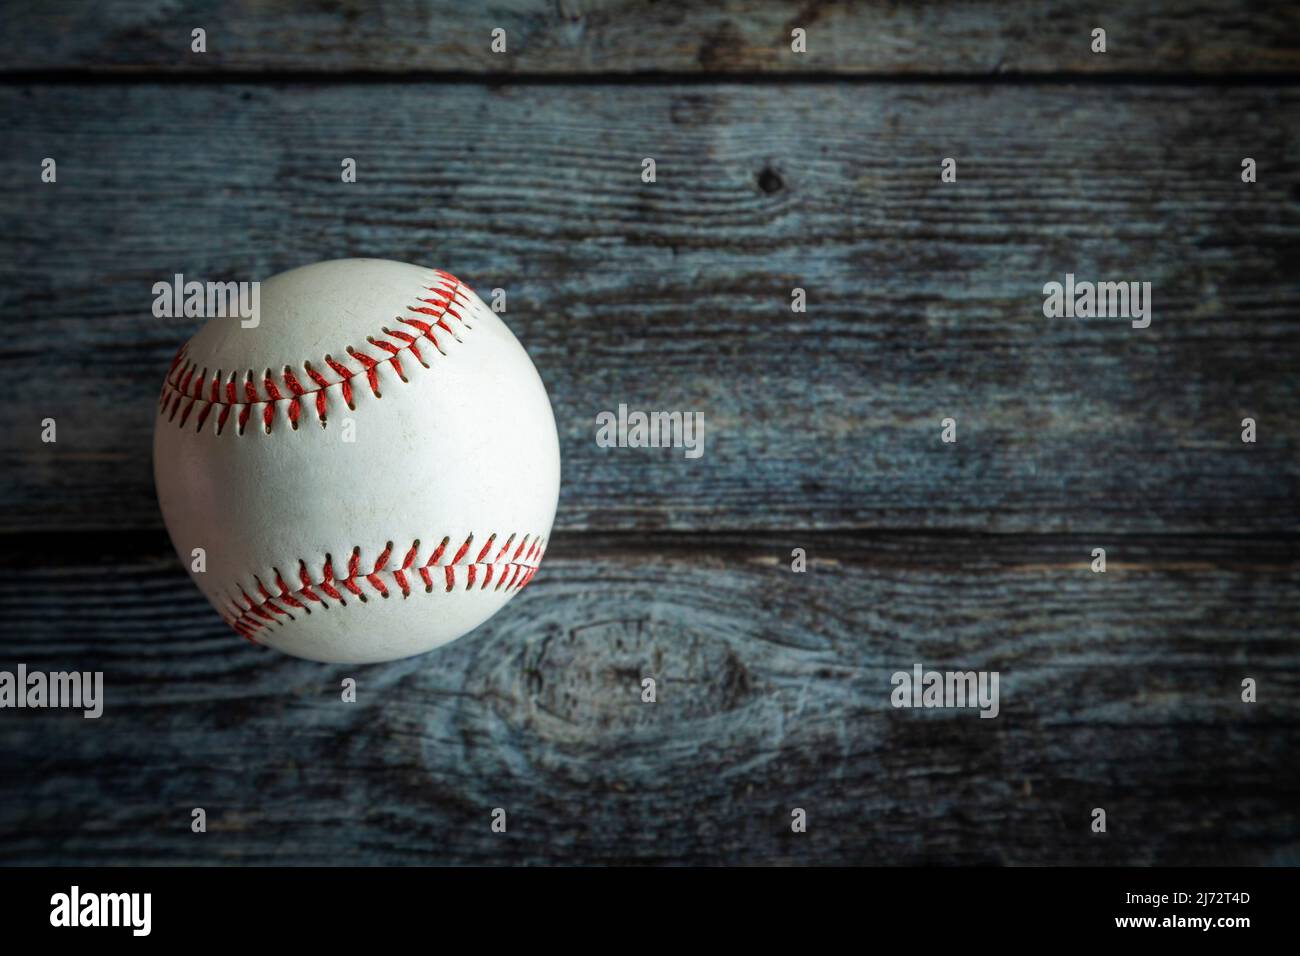 Pelota de béisbol o sóftbol de cuero sobre fondo rústico de madera con espacio de copia. Foto de stock